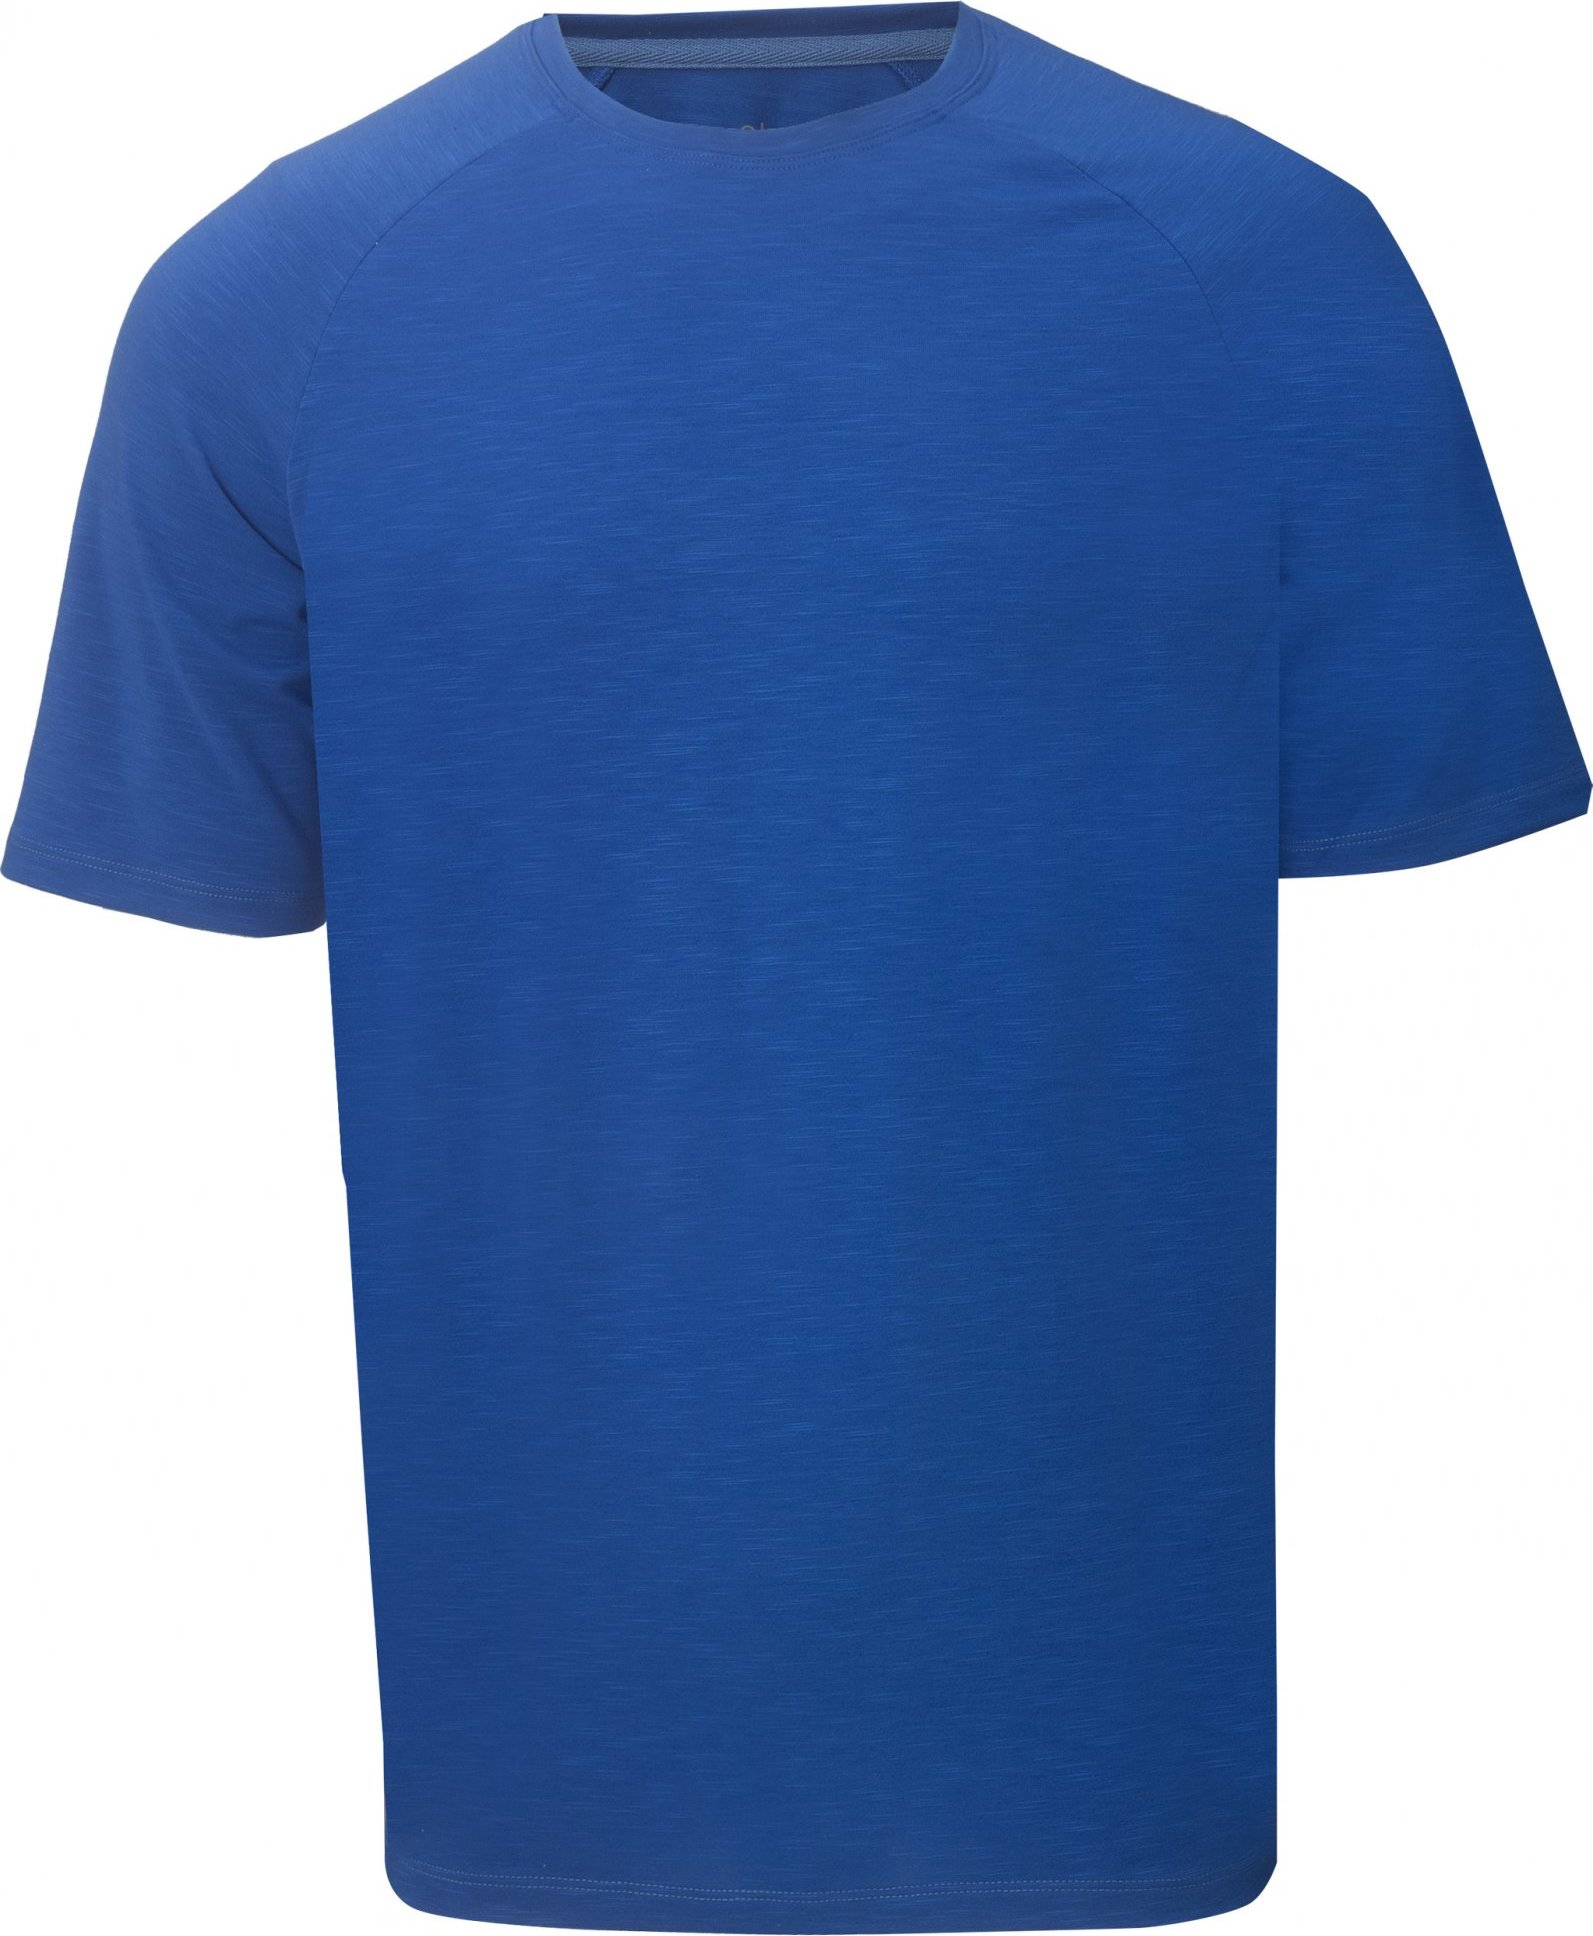 Pánské funkční triko s krátkým rukávem 2117 Linghem modré Velikost: S